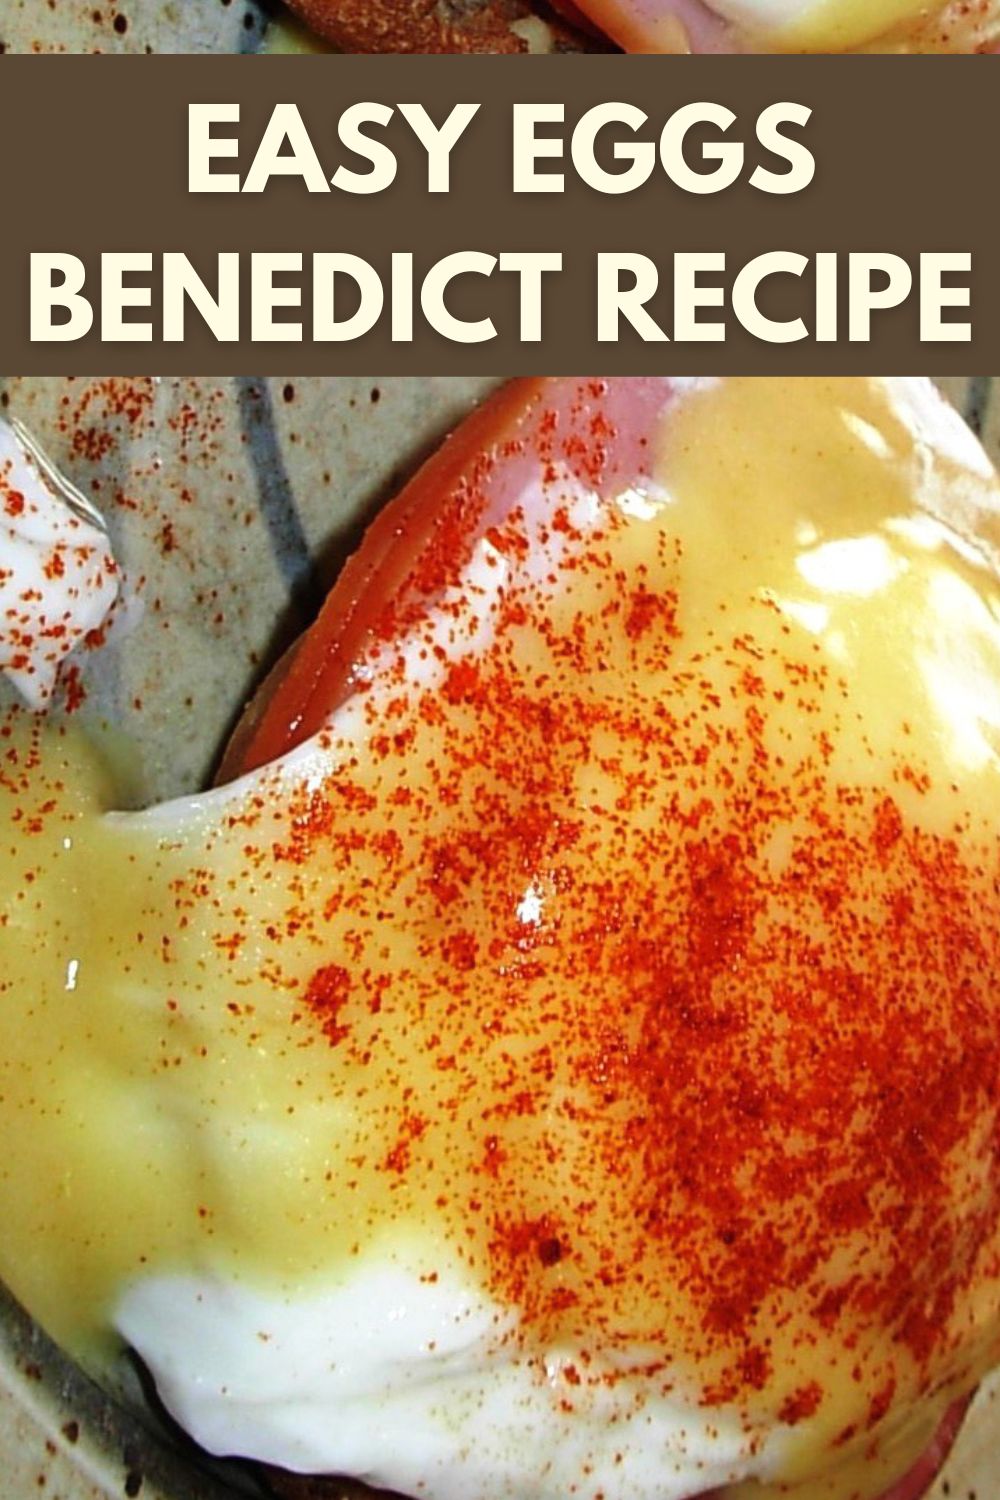 Easy eggs Benedict recipe. 